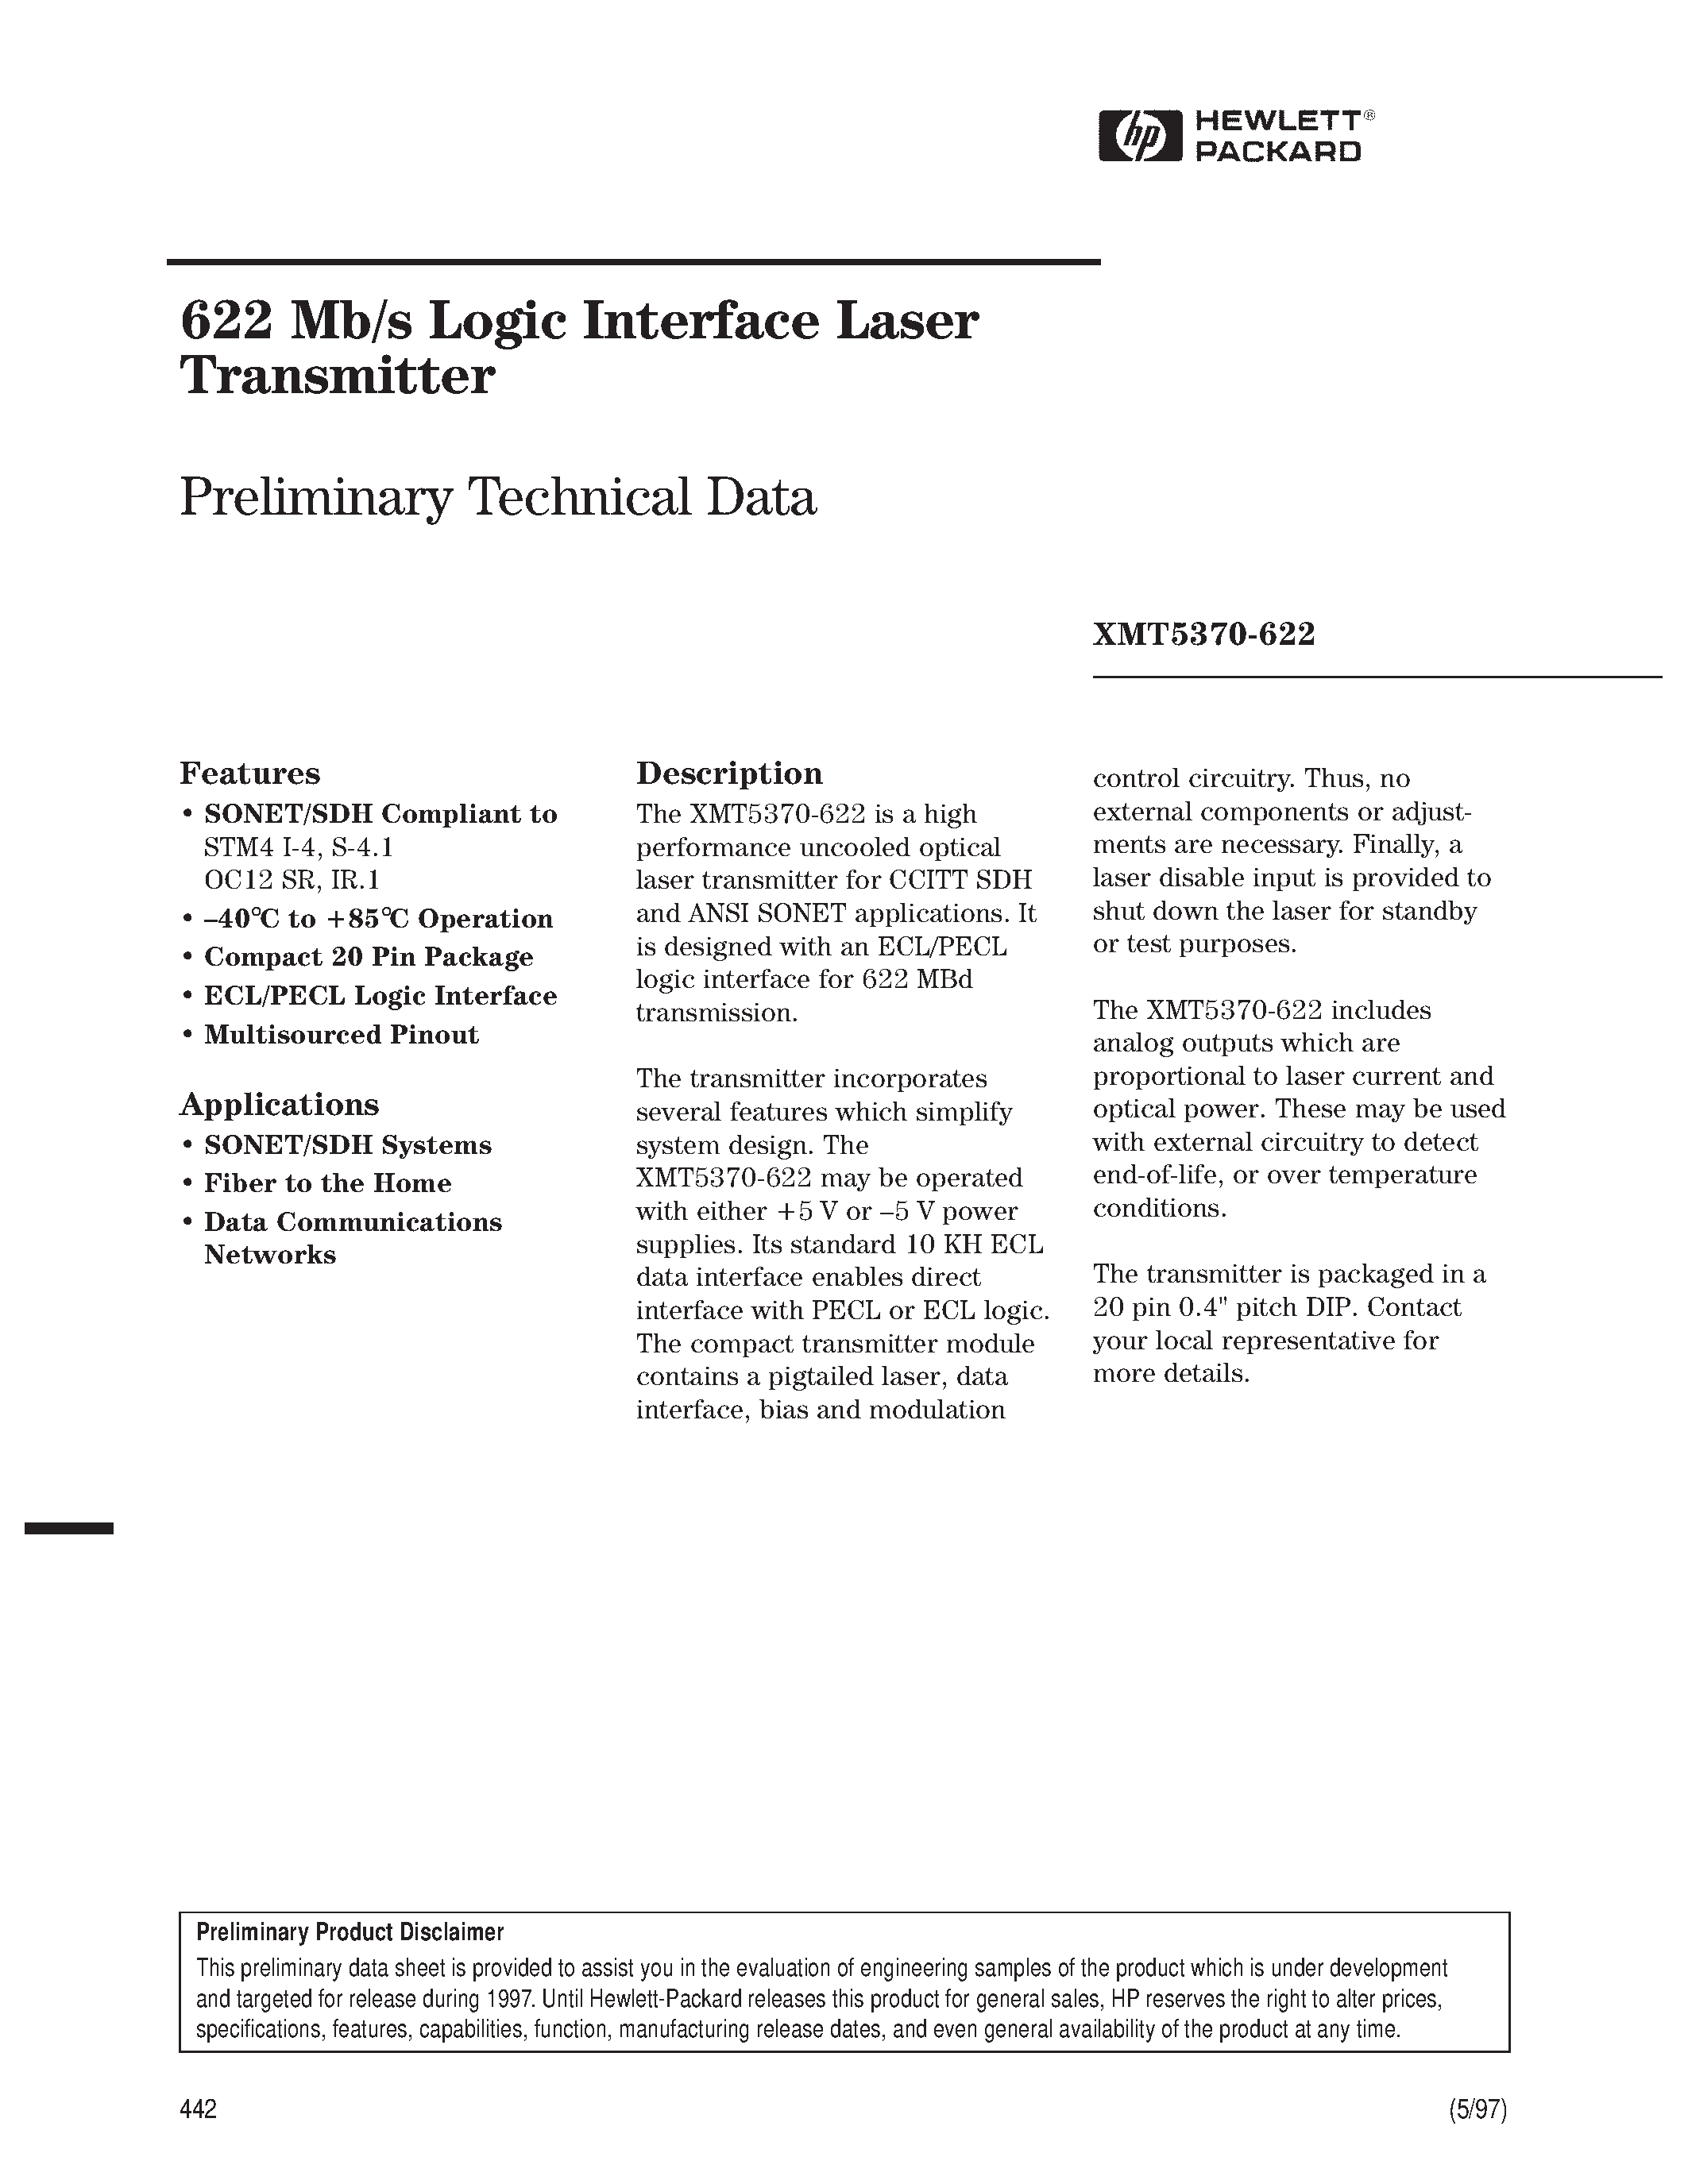 Datasheet XMT5160B-155-ST - 622 Mb/s Logic Interface Laser Transmitter page 1